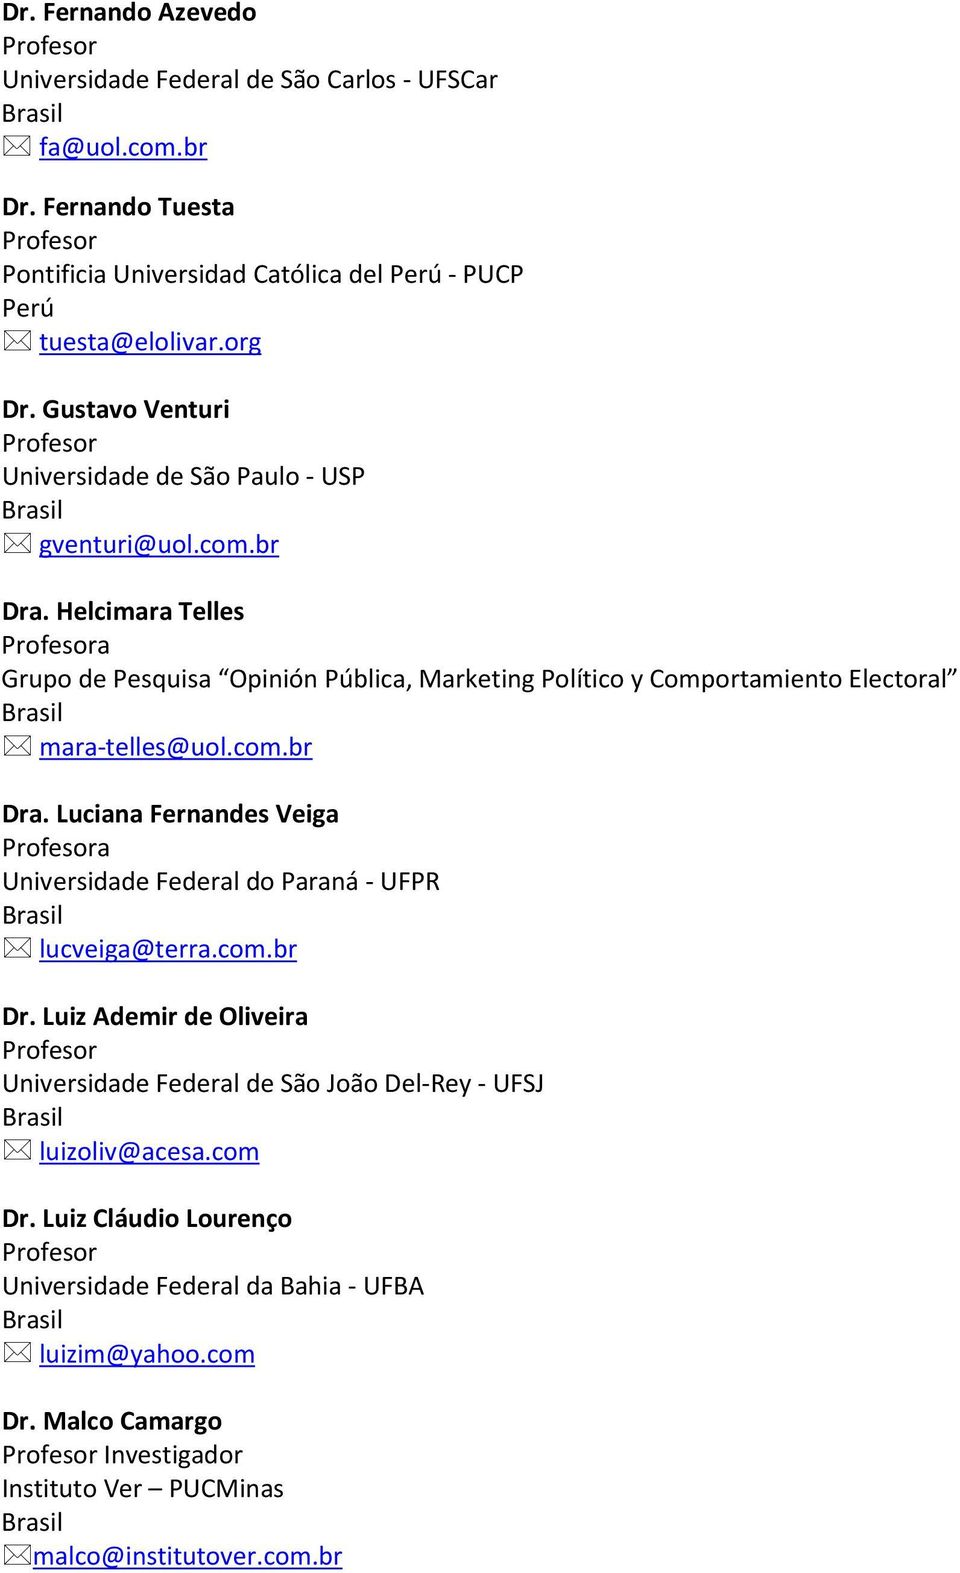 Helcimara Telles a Grupo de Pesquisa Opinión Pública, Marketing Político y Comportamiento Electoral mara-telles@uol.com.br Dra.